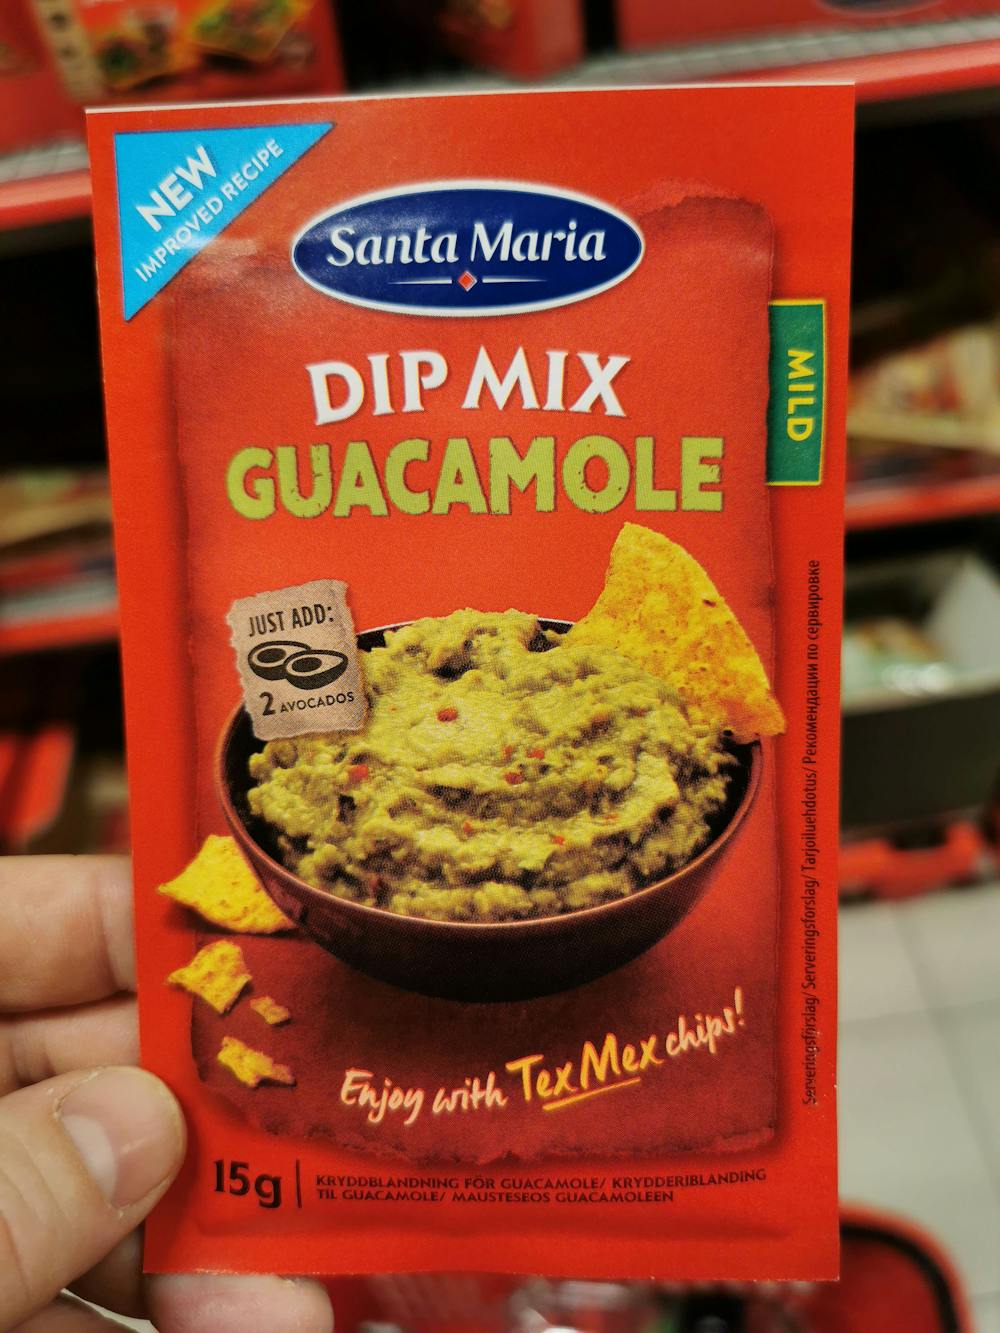 Dip mix guacamole, Santa Maria